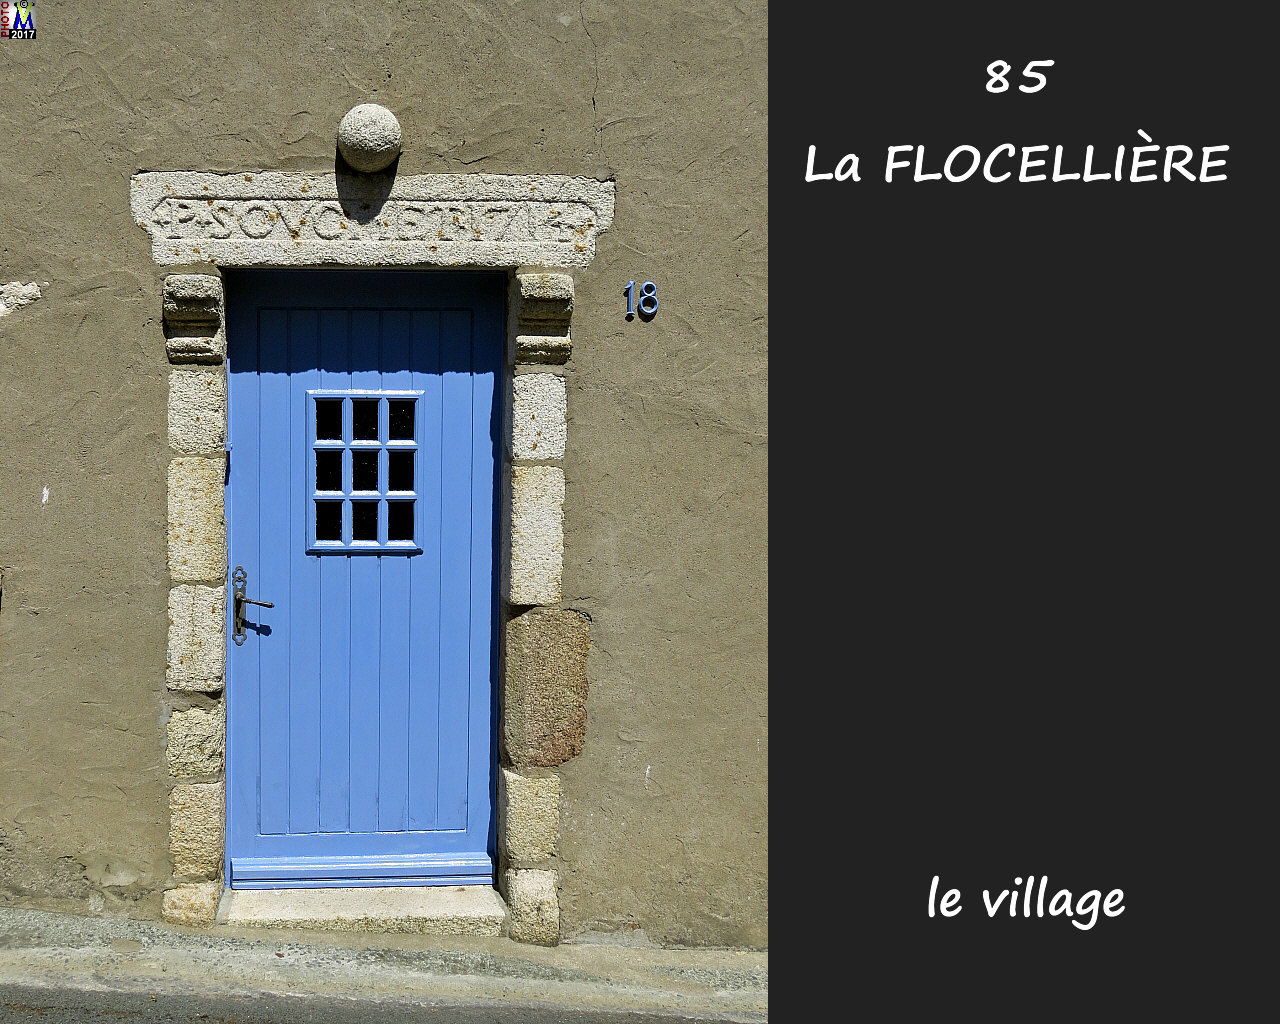 85FLOCELLIERE_village_1000.jpg